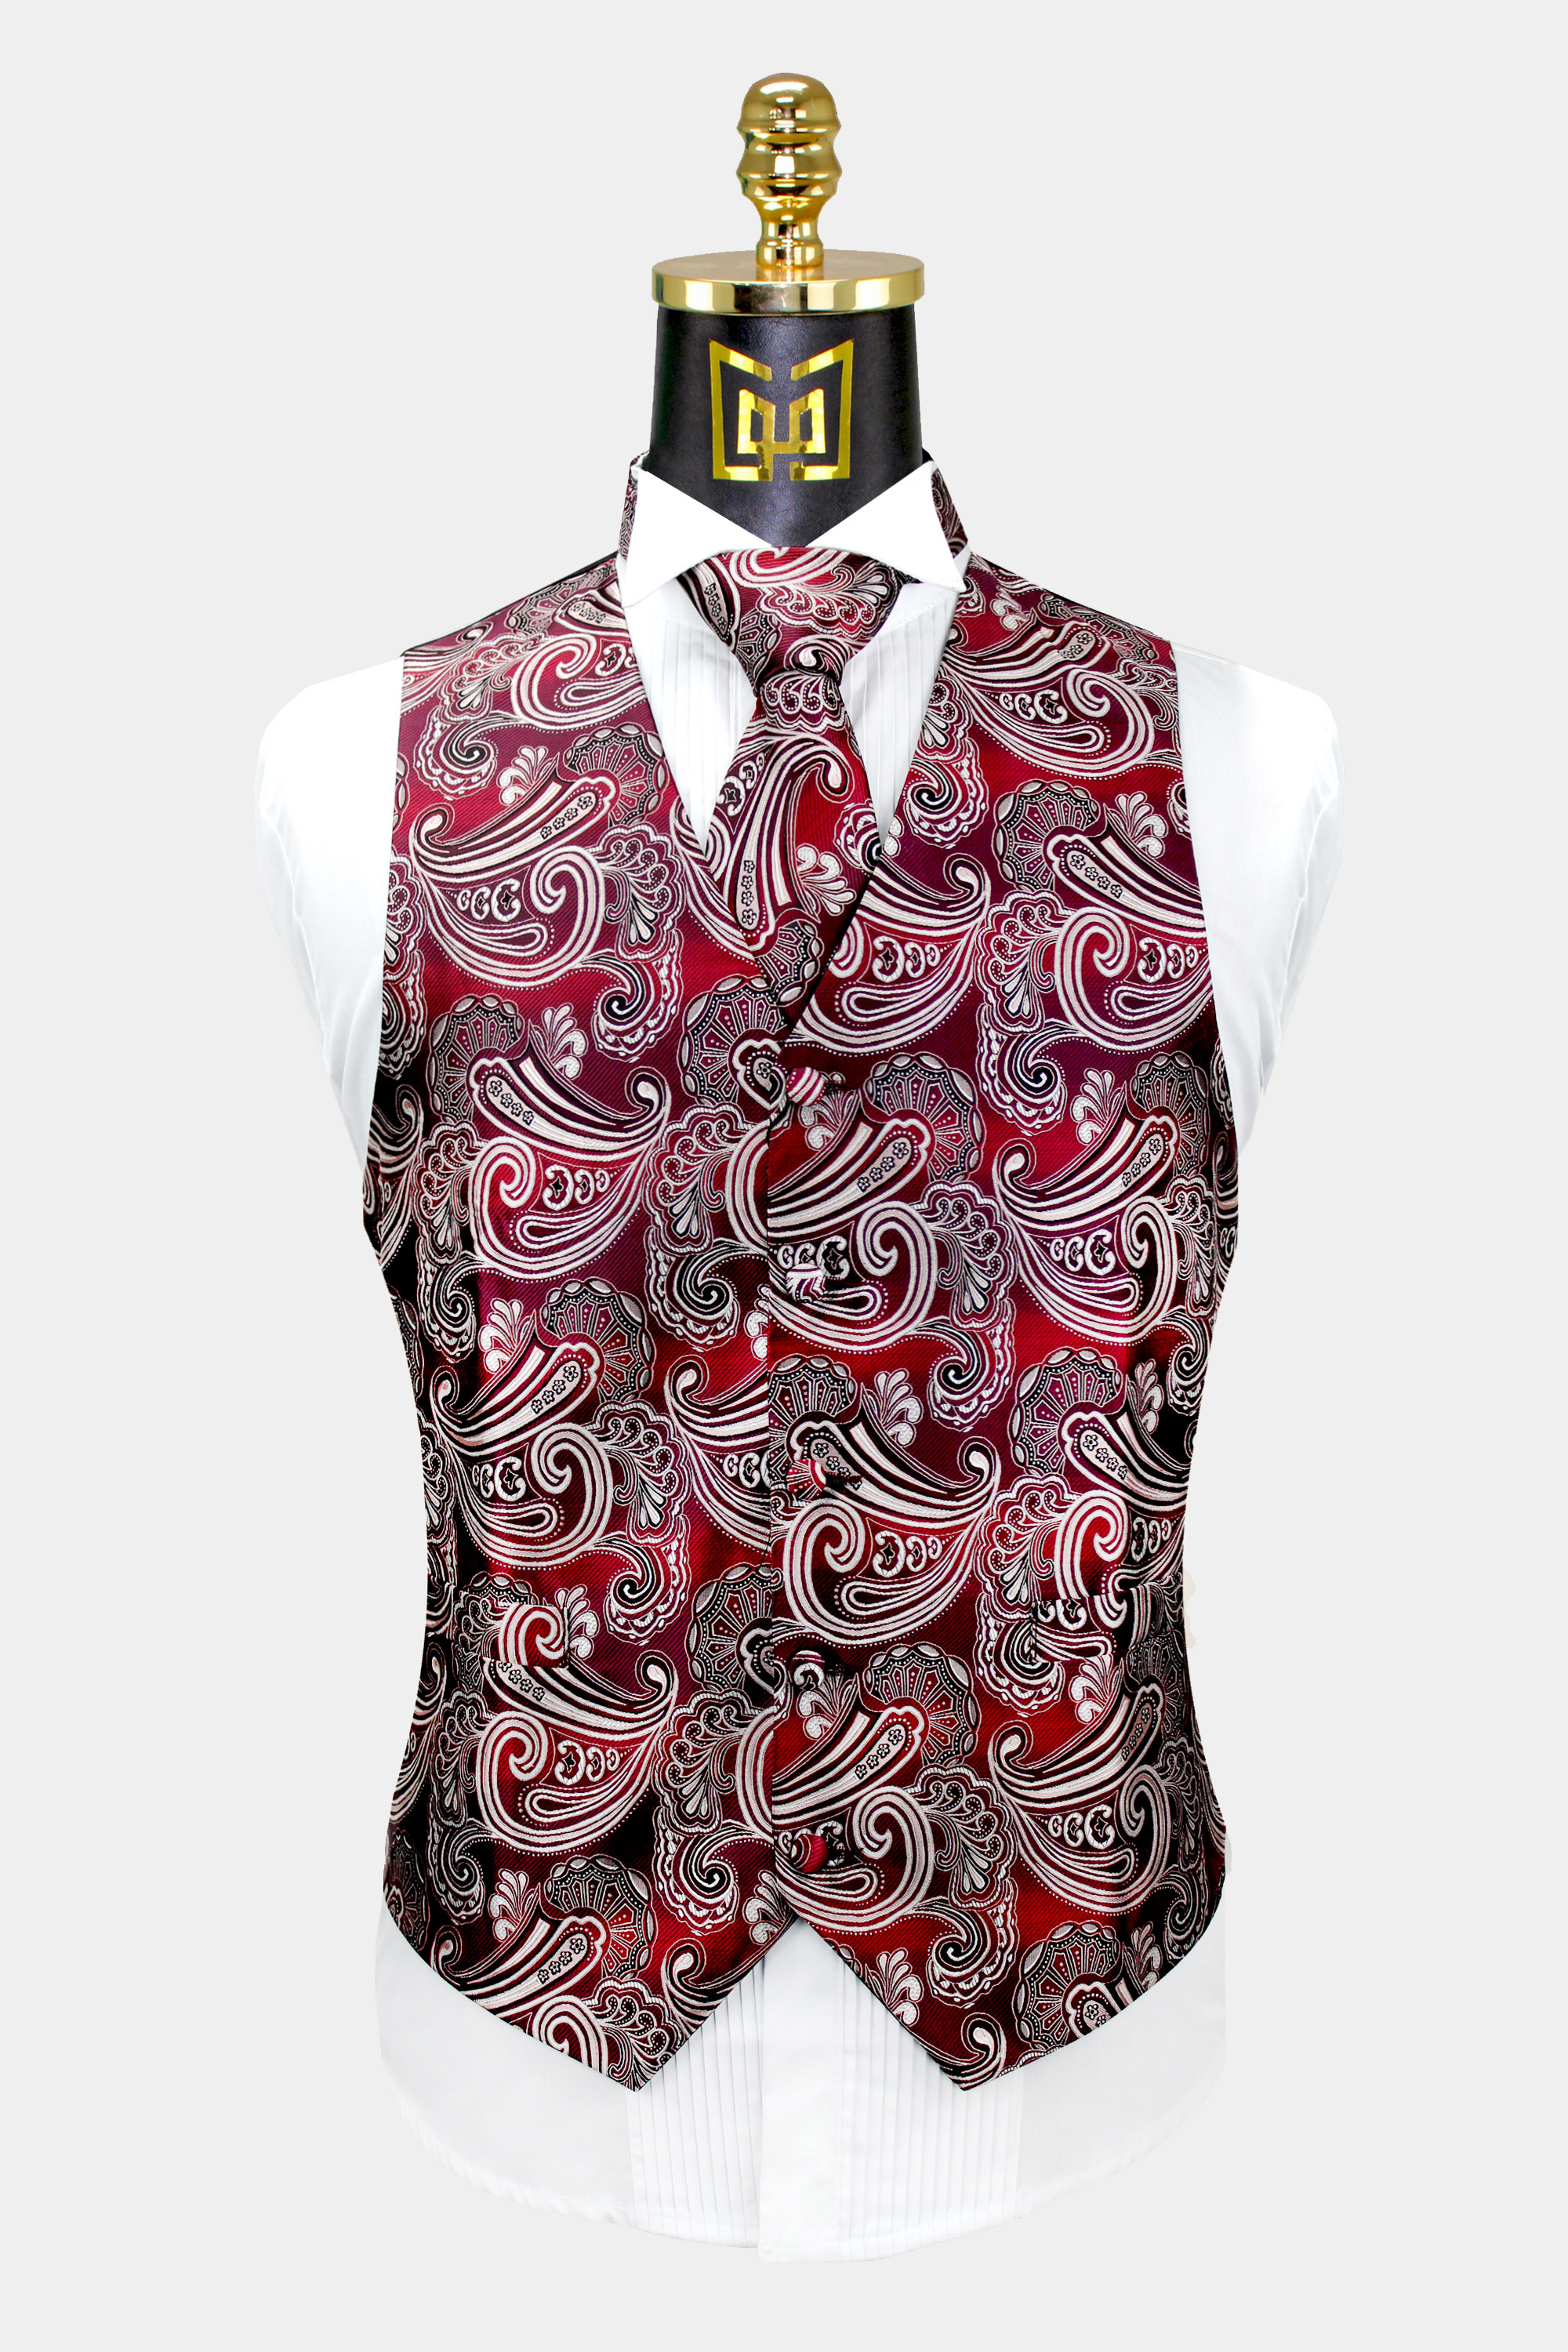 Mens-Burgundy-Paisley-Vest-and-Tie-Set-Wedding-Tuxedo-Groom-Vest-from-Gentlemansguru.com_